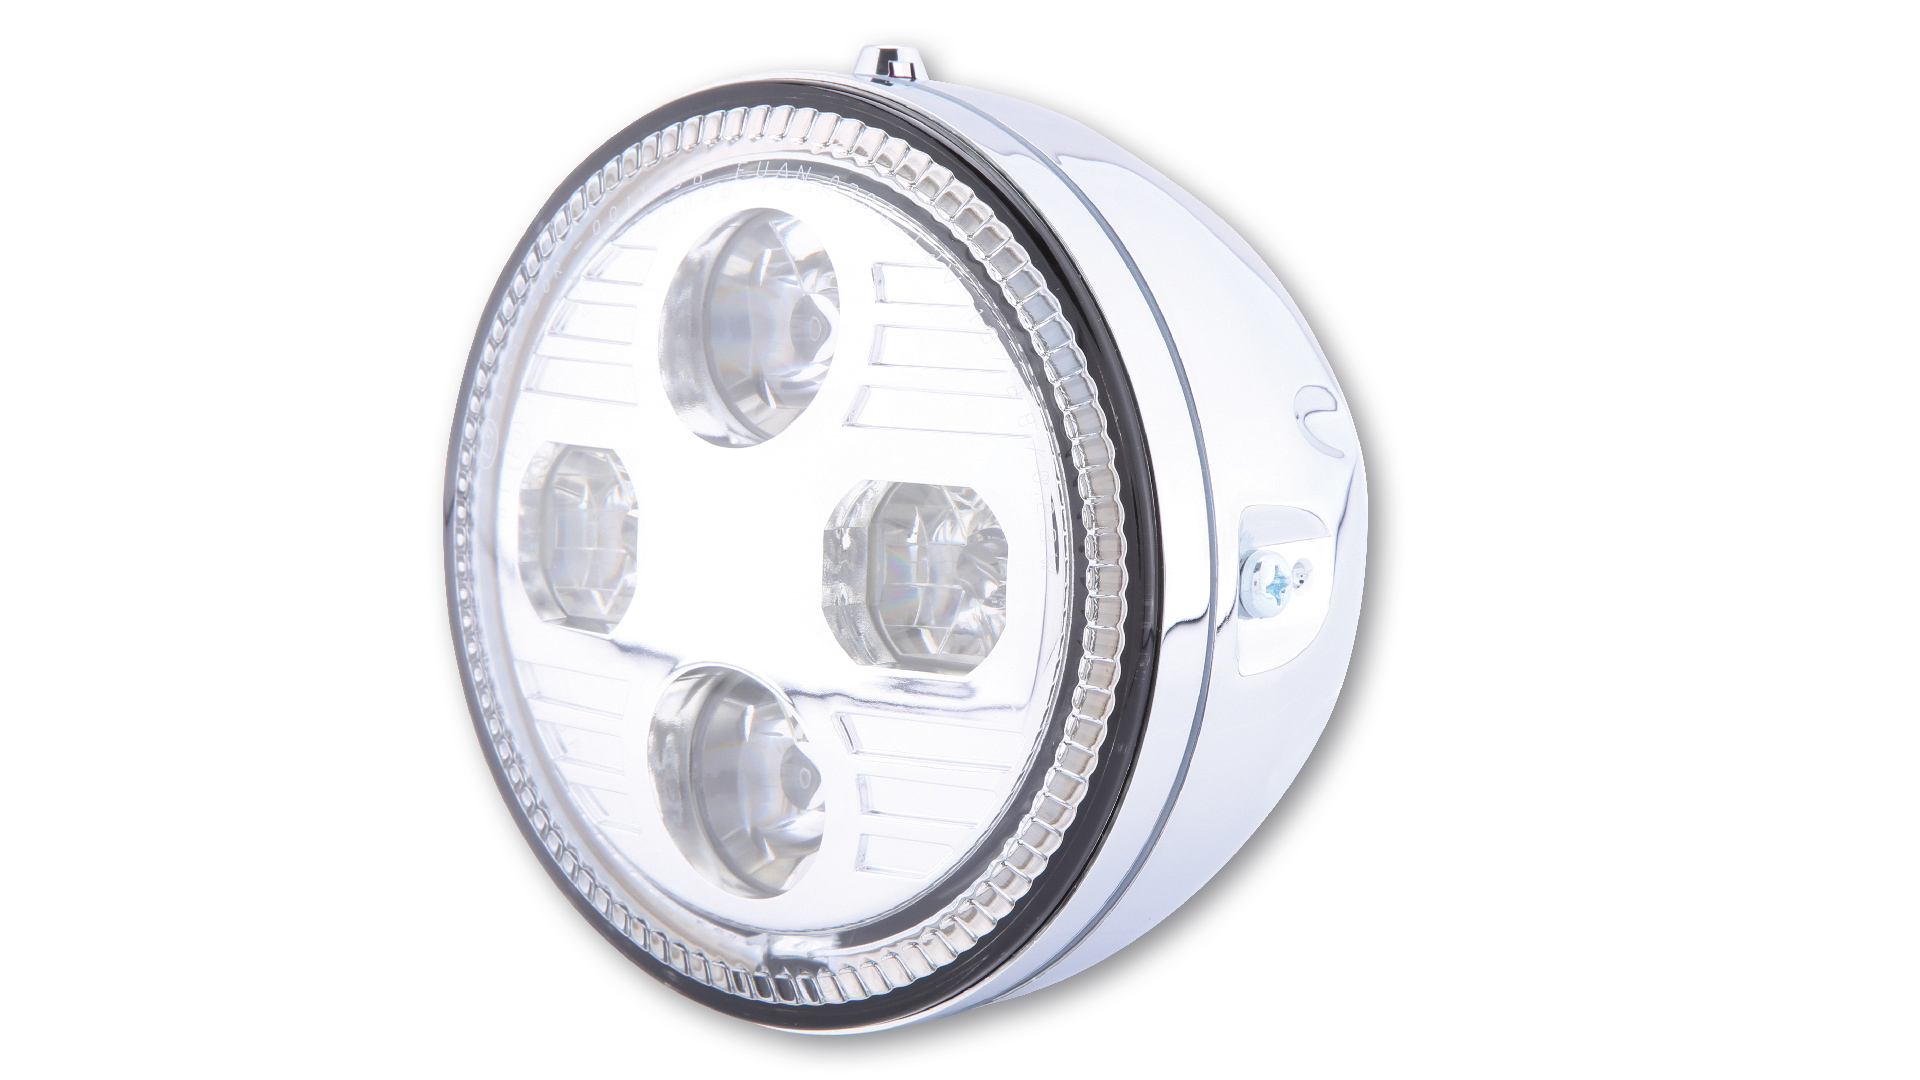 HIGHSIDER 5 3/4 Zoll LED-Hauptscheinwerfer ATLANTA mit Standlicht, Metallgehäuse schwarz, seitliche Befestigung, E-geprüft.